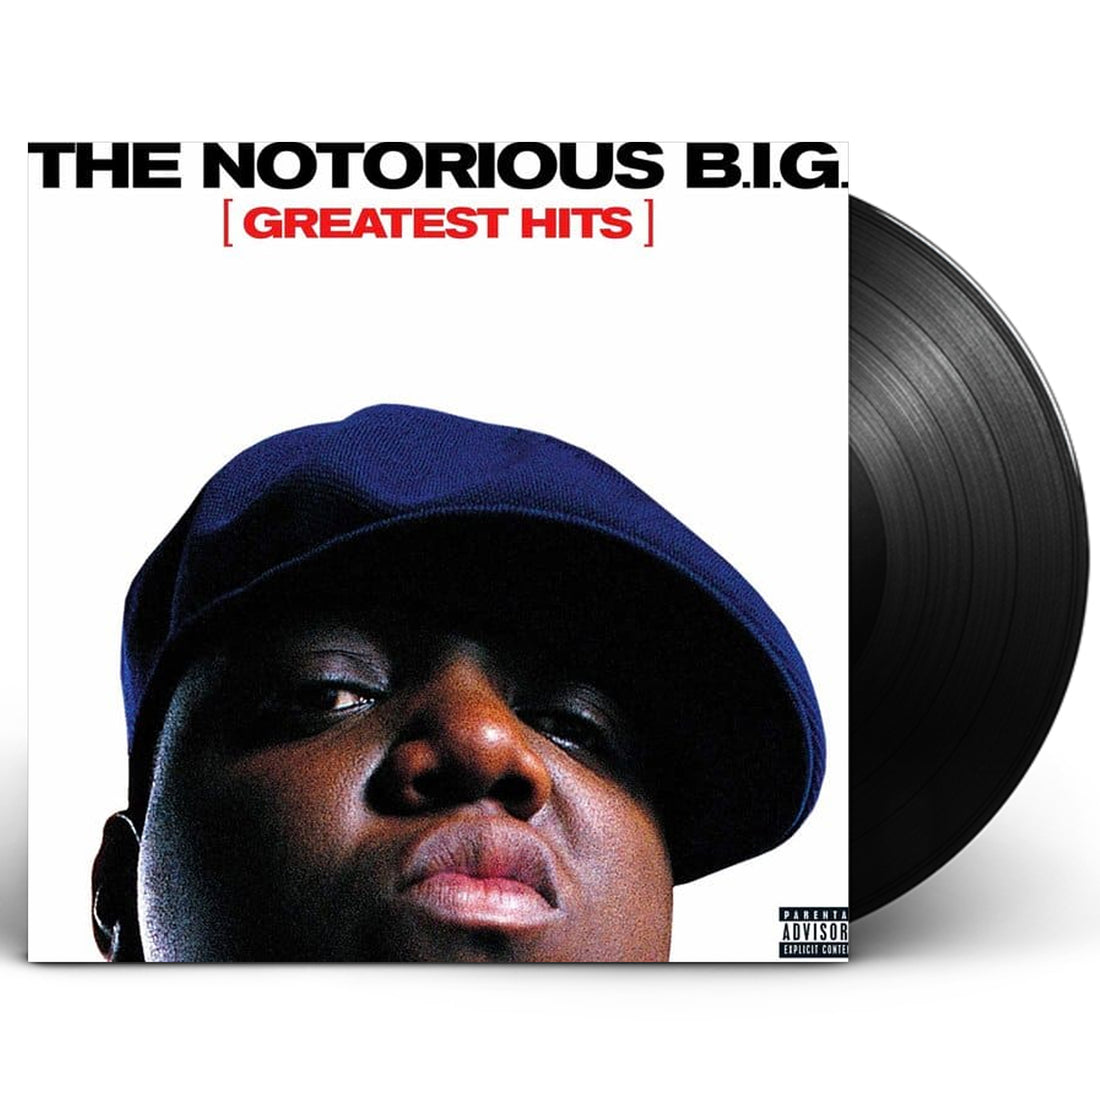 Notorious B.I.G. "Greatest Hits" 2xLP Vinyl